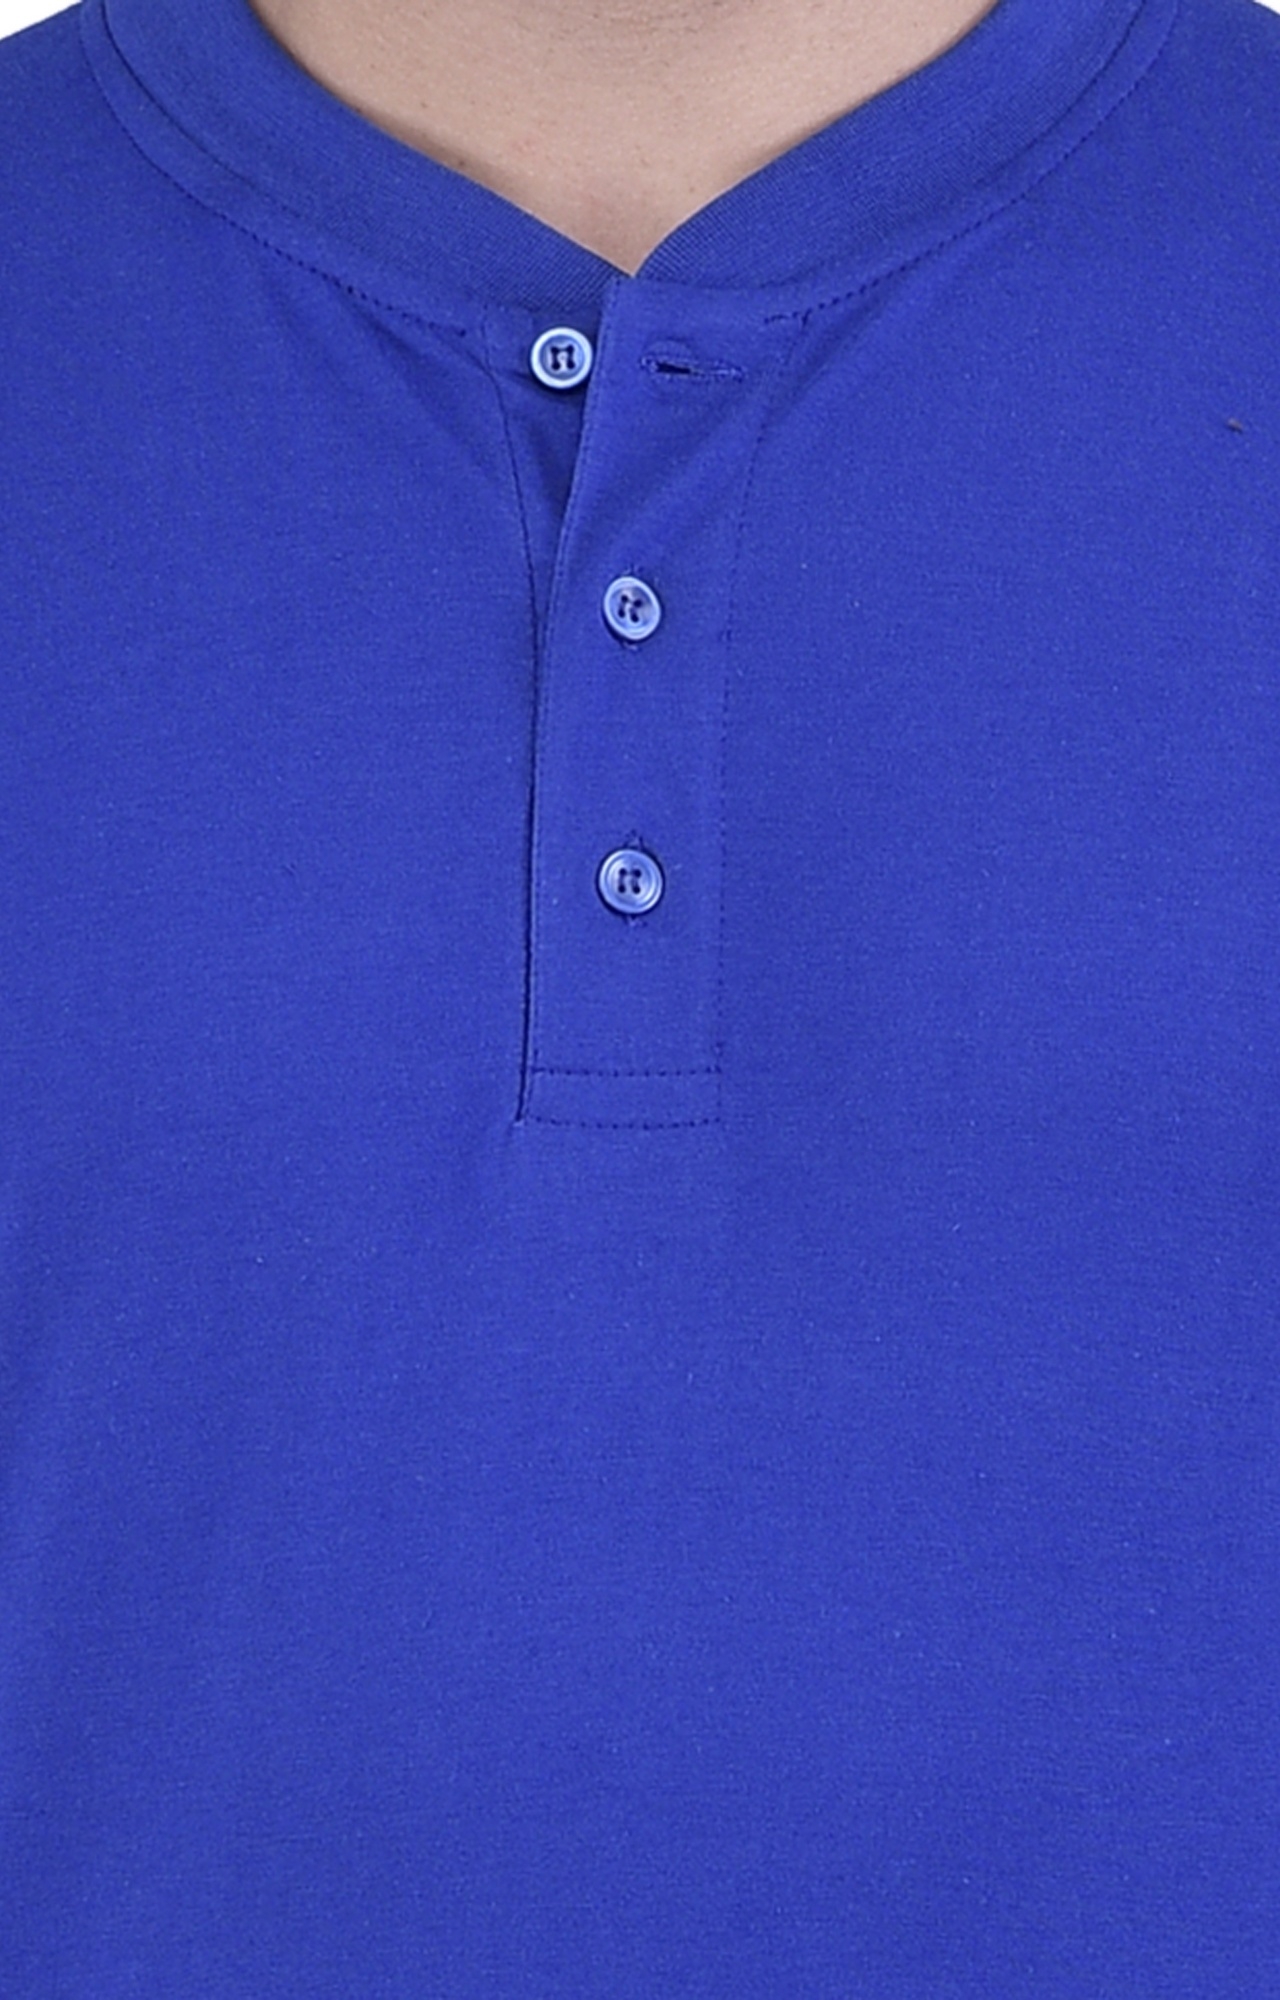 Men's Blue Cotton Solid Polos